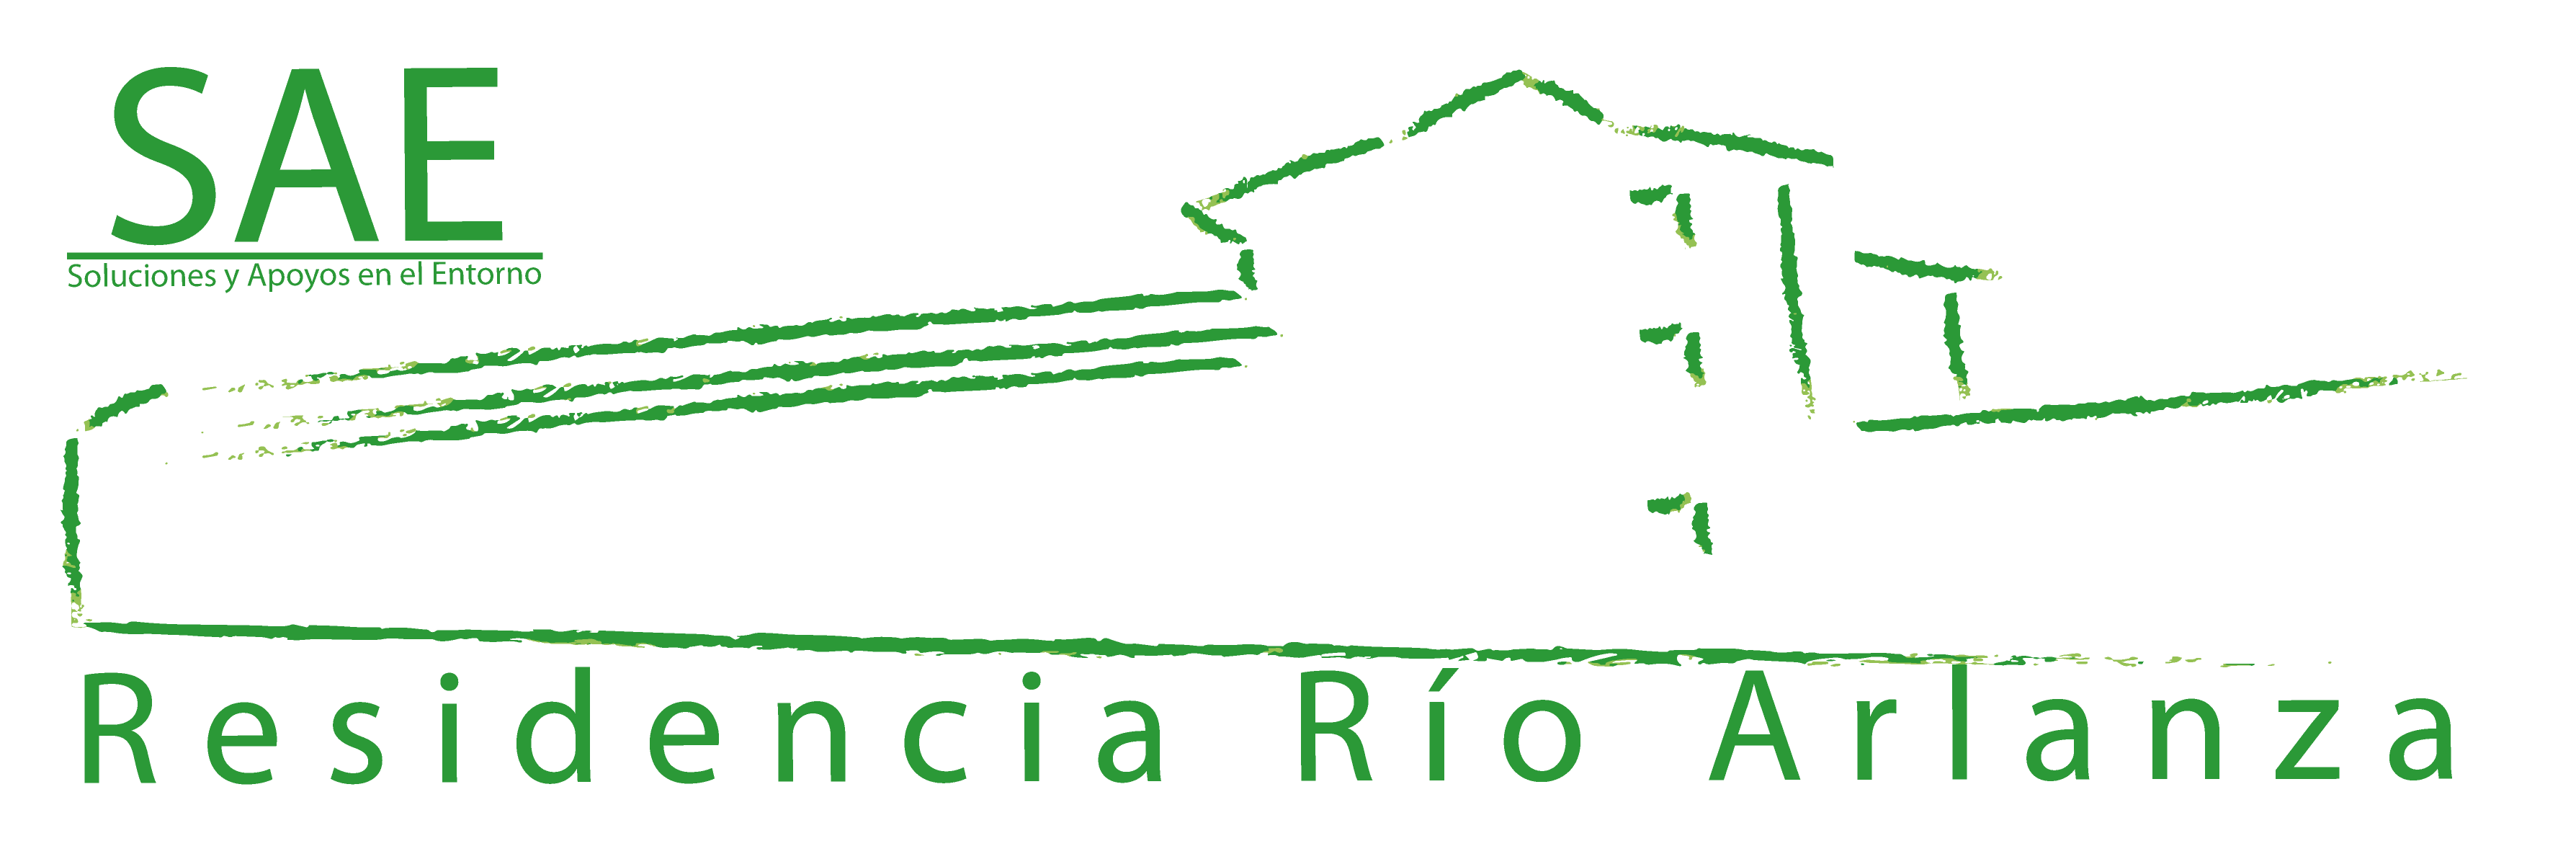 Logotipo Residencia Río Arlanza vinculo a indice